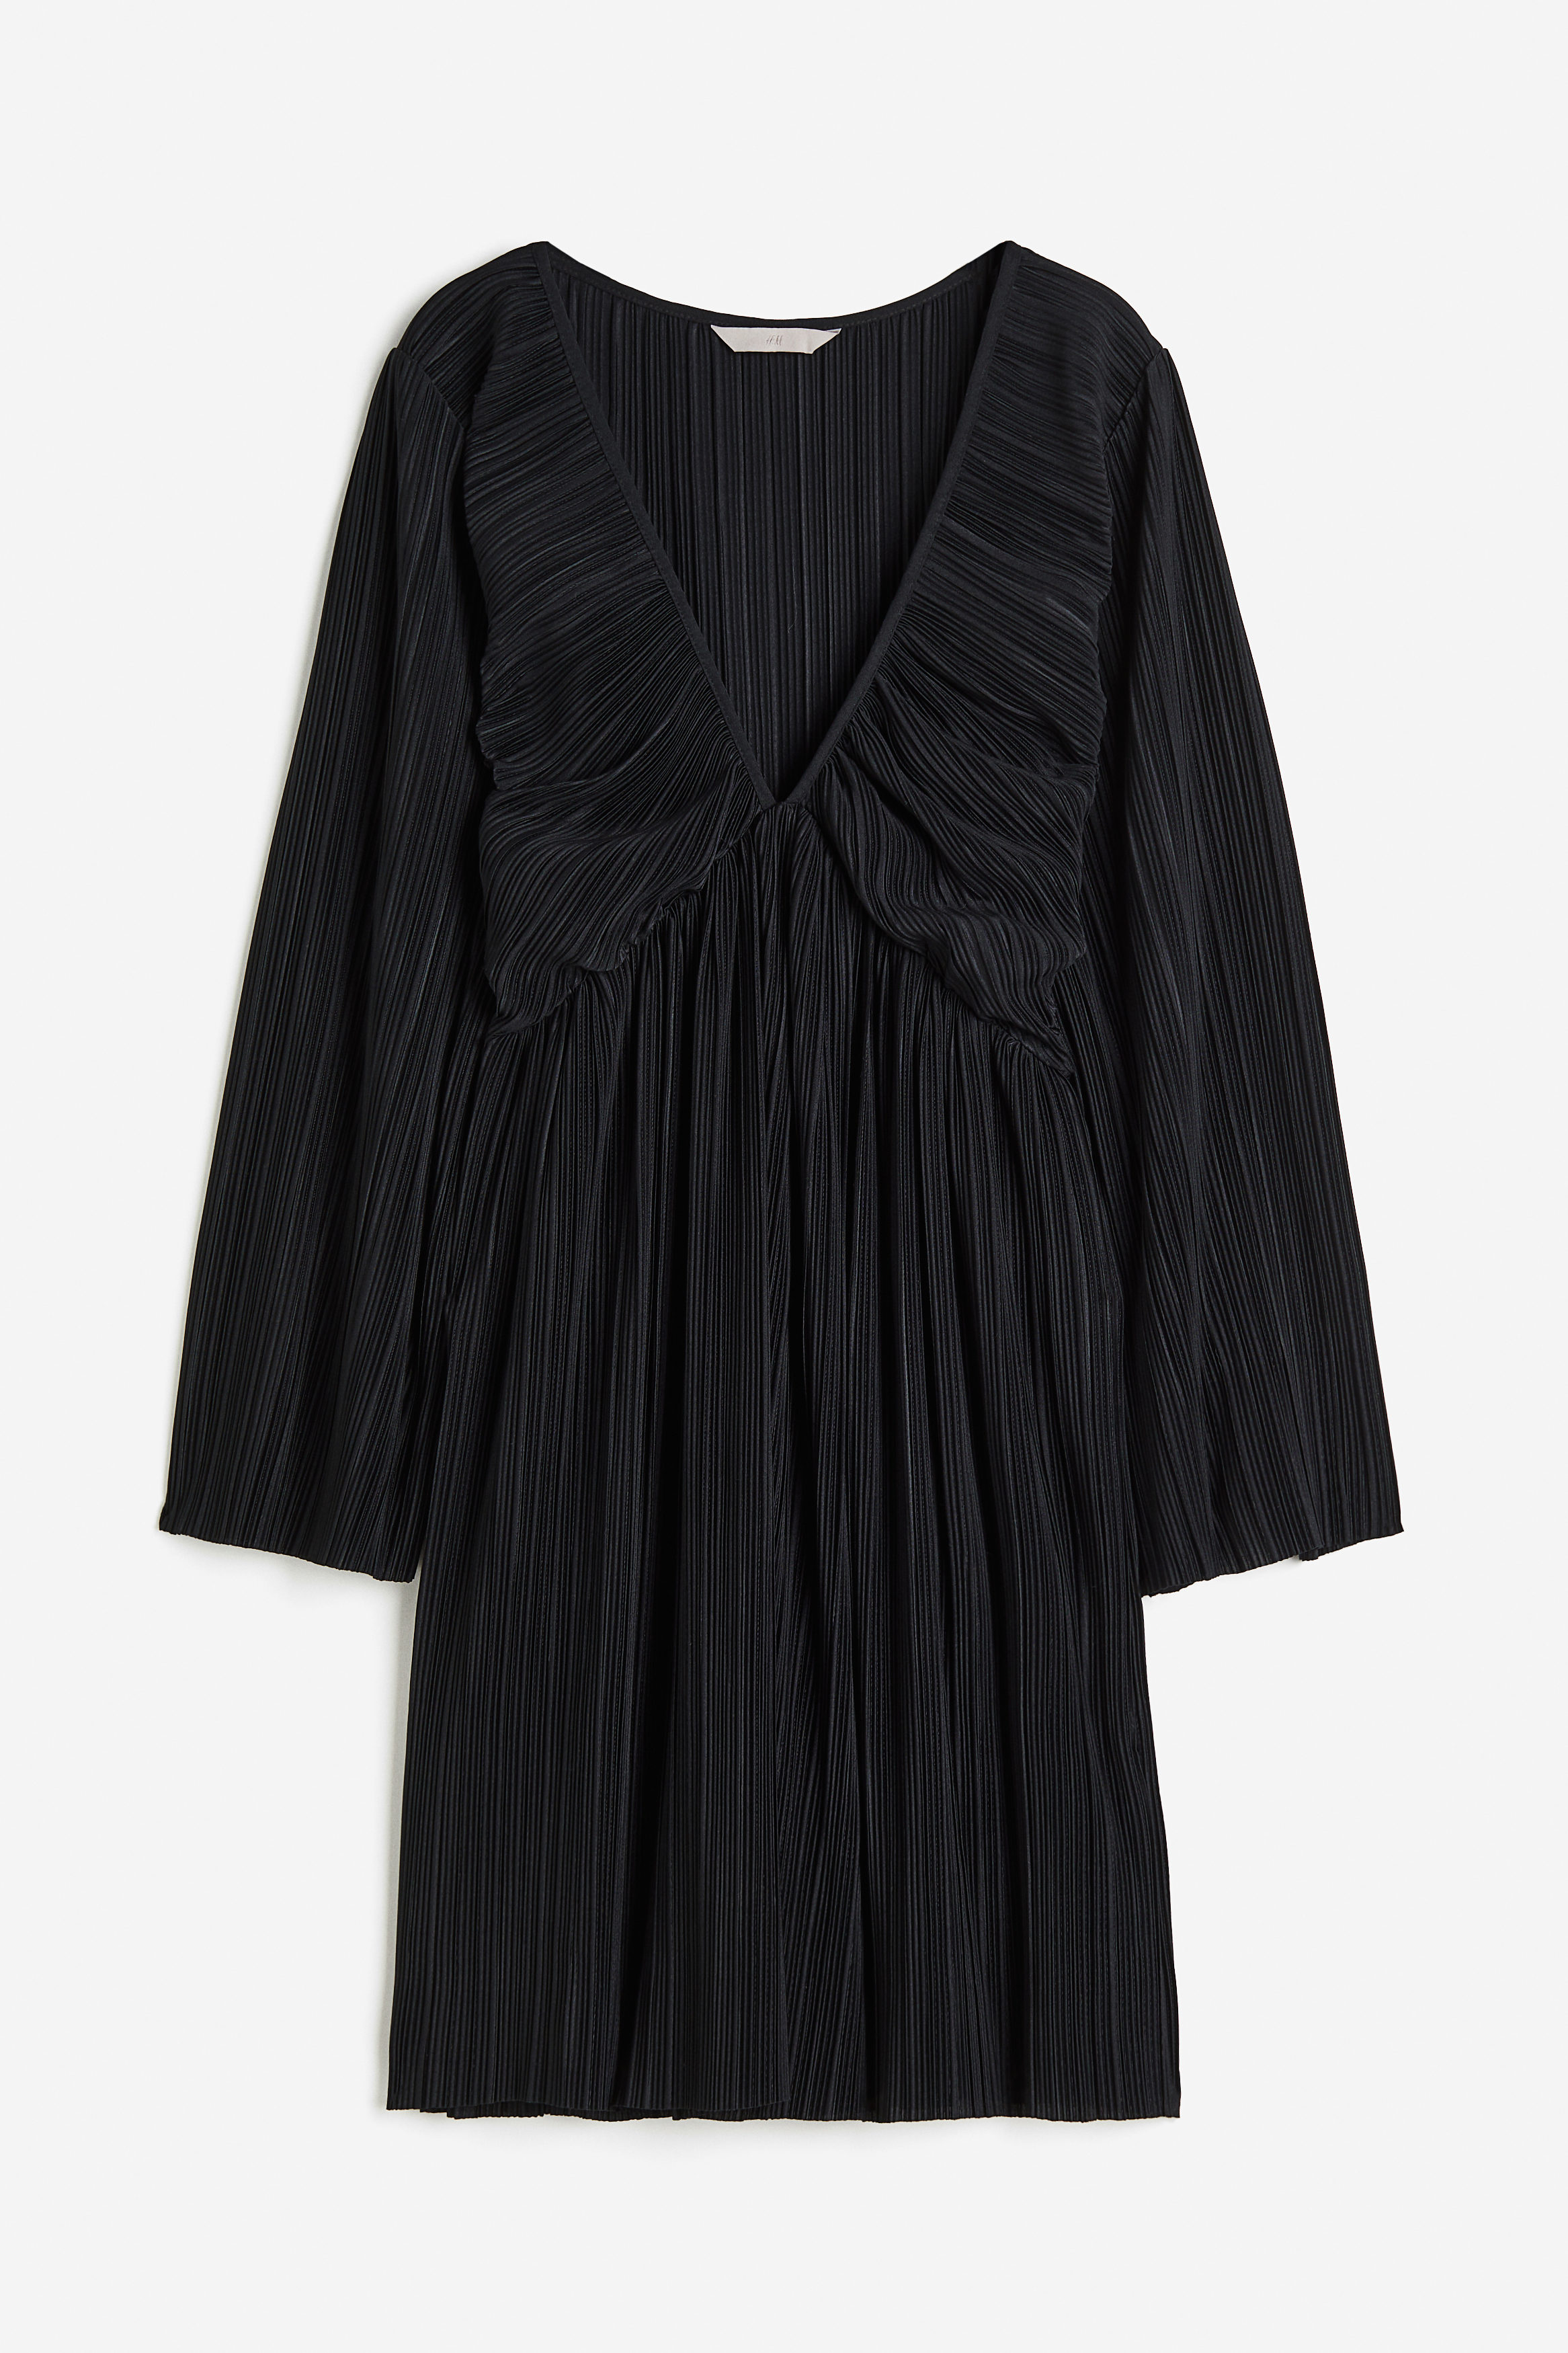 Billede af H&M Plisseret Kjole I Jersey Sort, Hverdagskjoler. Farve: Black størrelse S